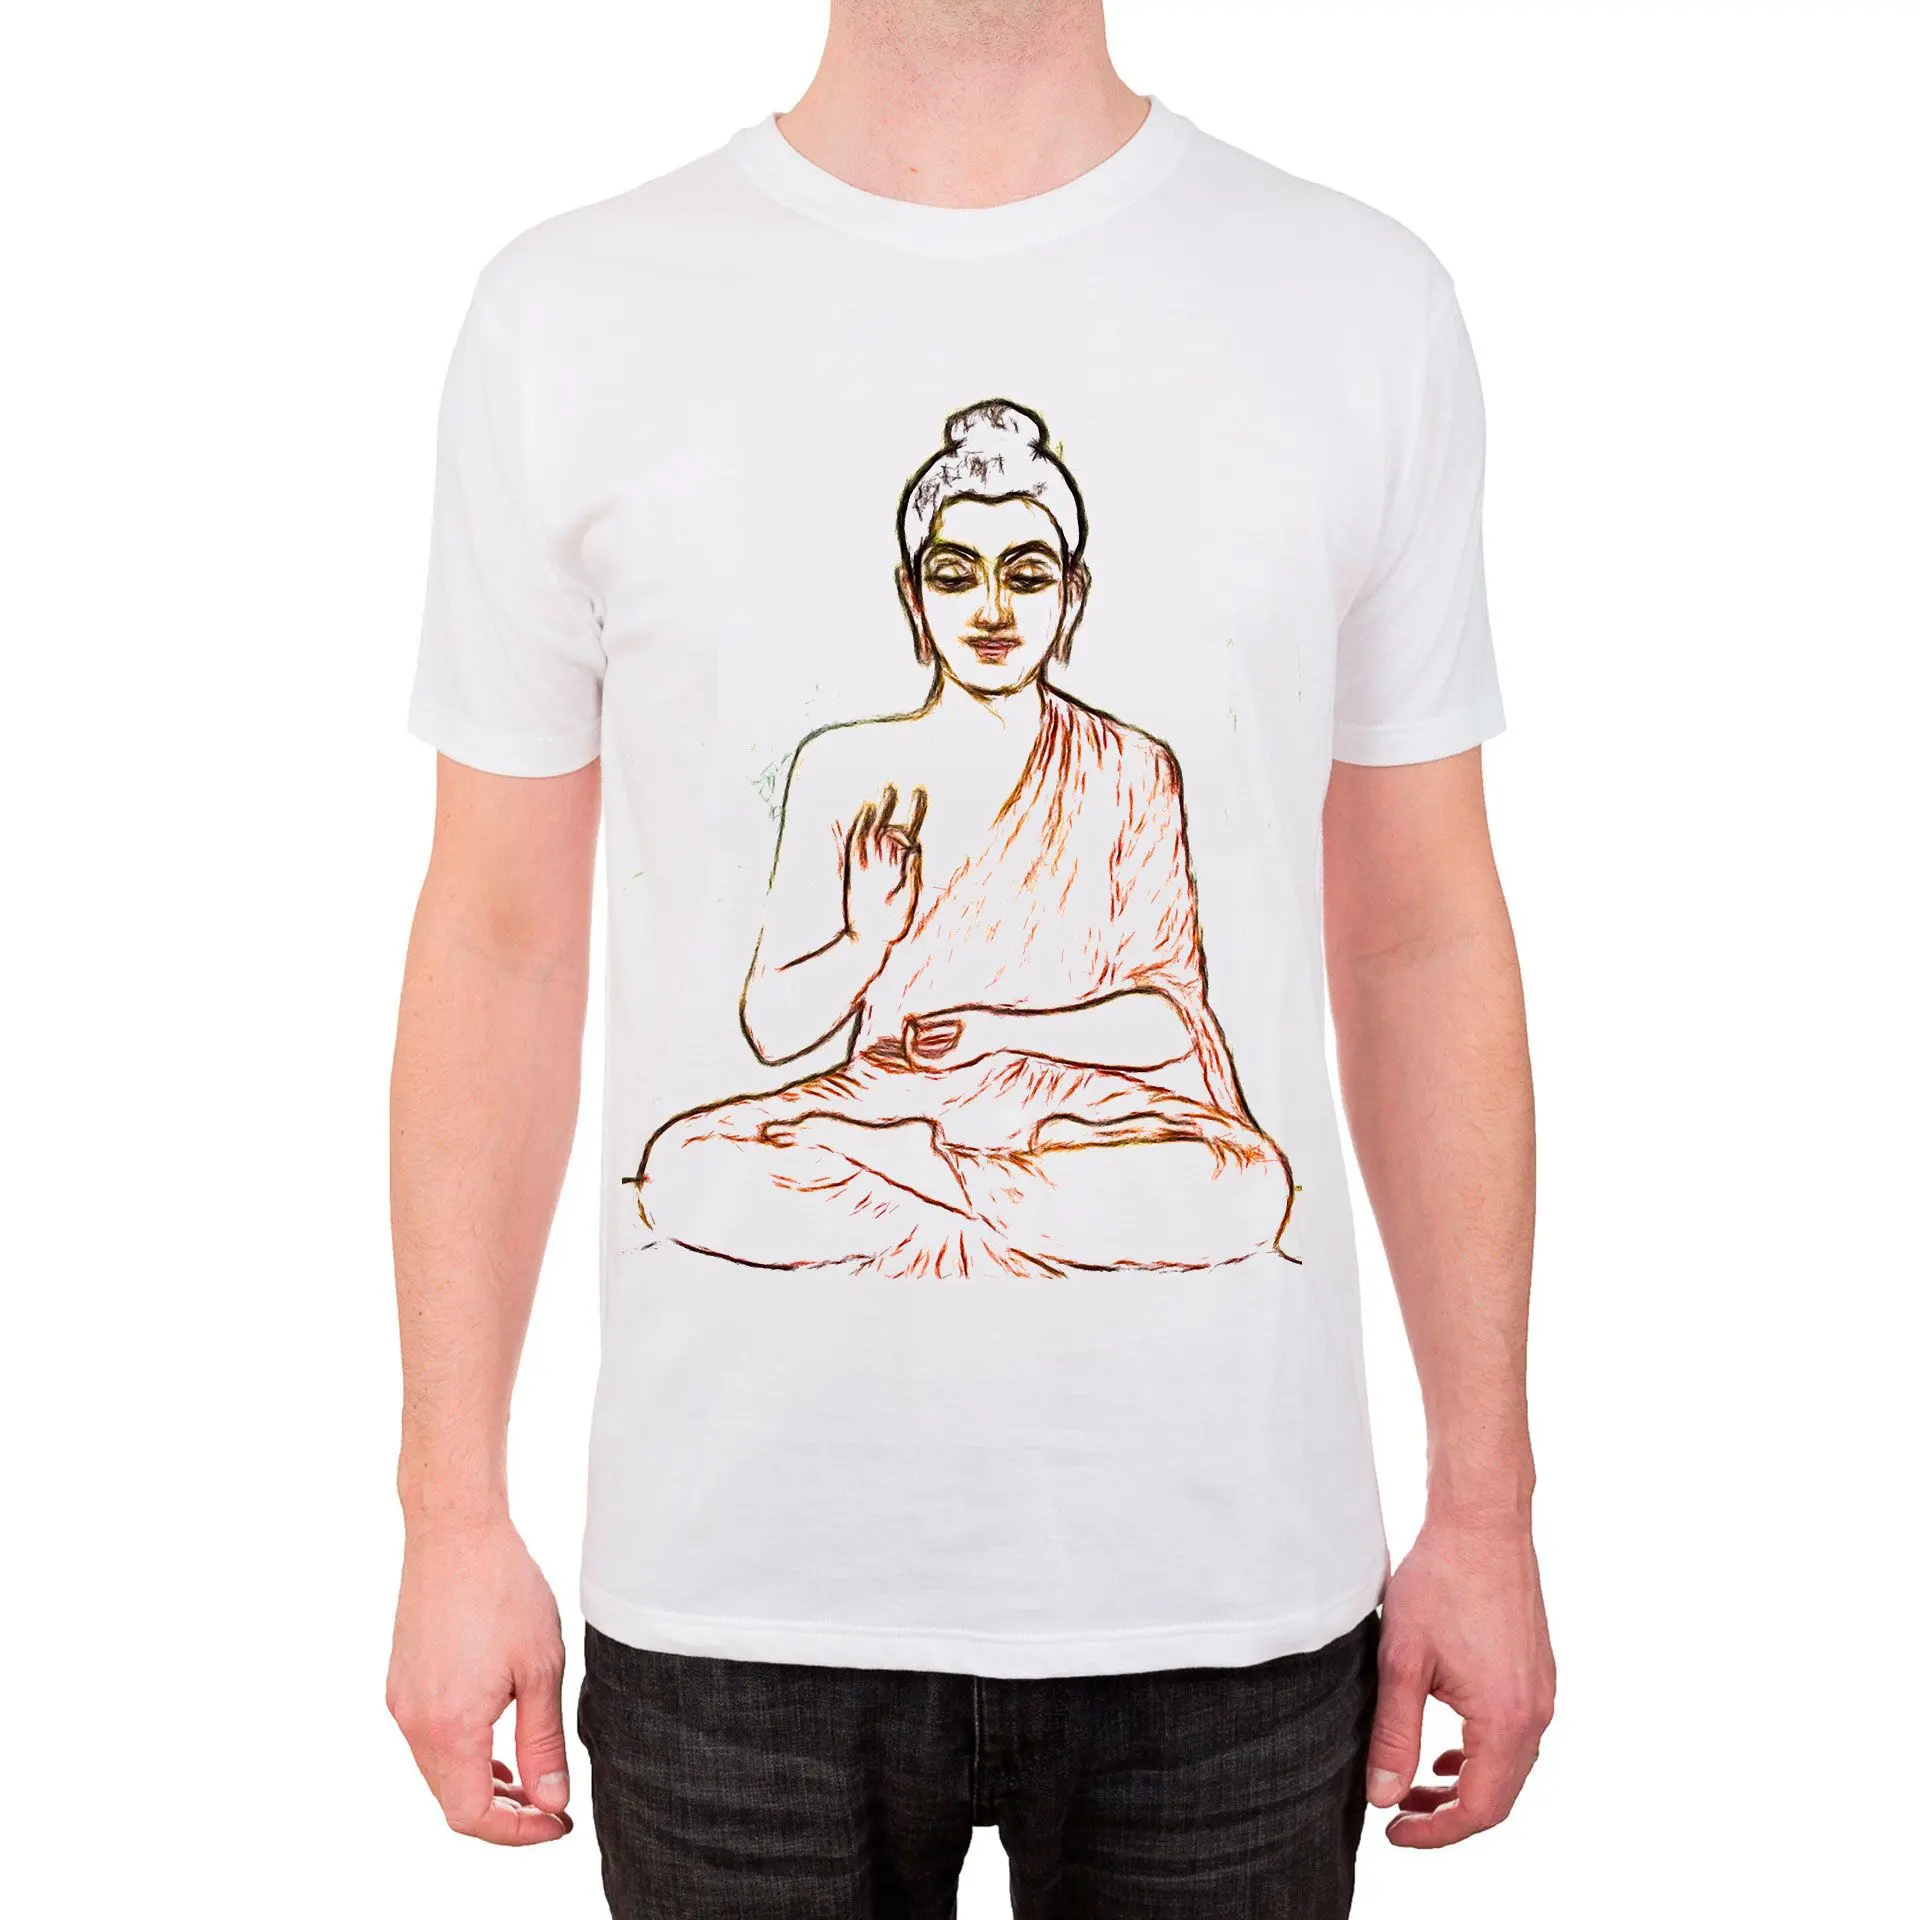 Μπλουζάκι με σκίτσο του Βούδα..